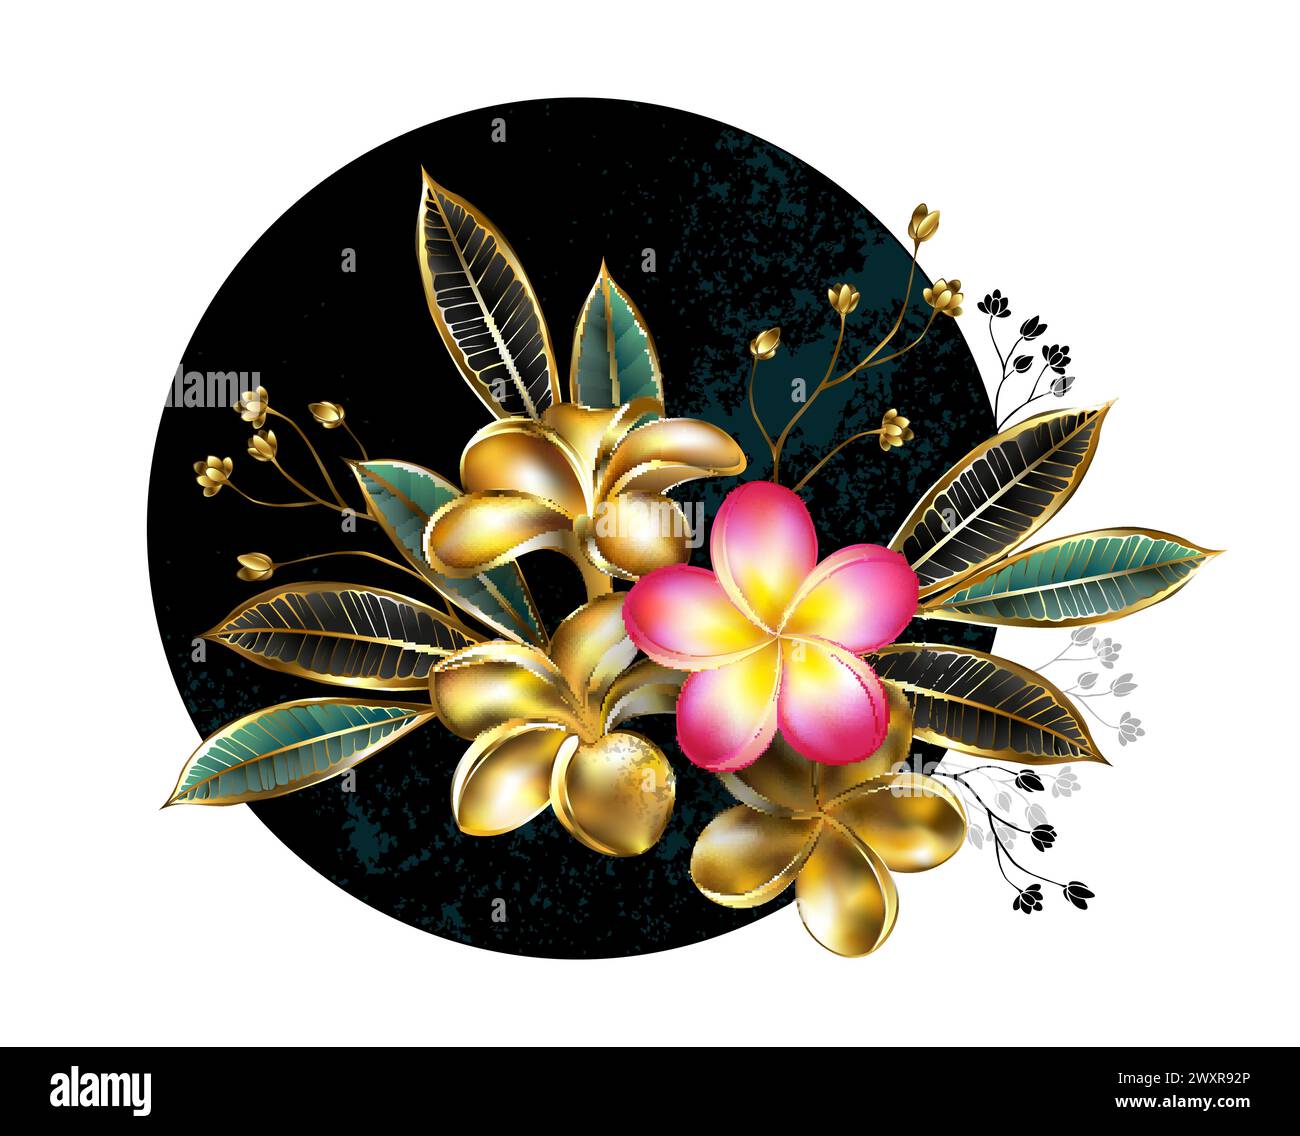 Composizione asimmetrica e floreale di oro, gioielli, fiori scintillanti e foglie di plumeria e fresco fiore rosa su cerchio nero. Design floreale. Illustrazione Vettoriale